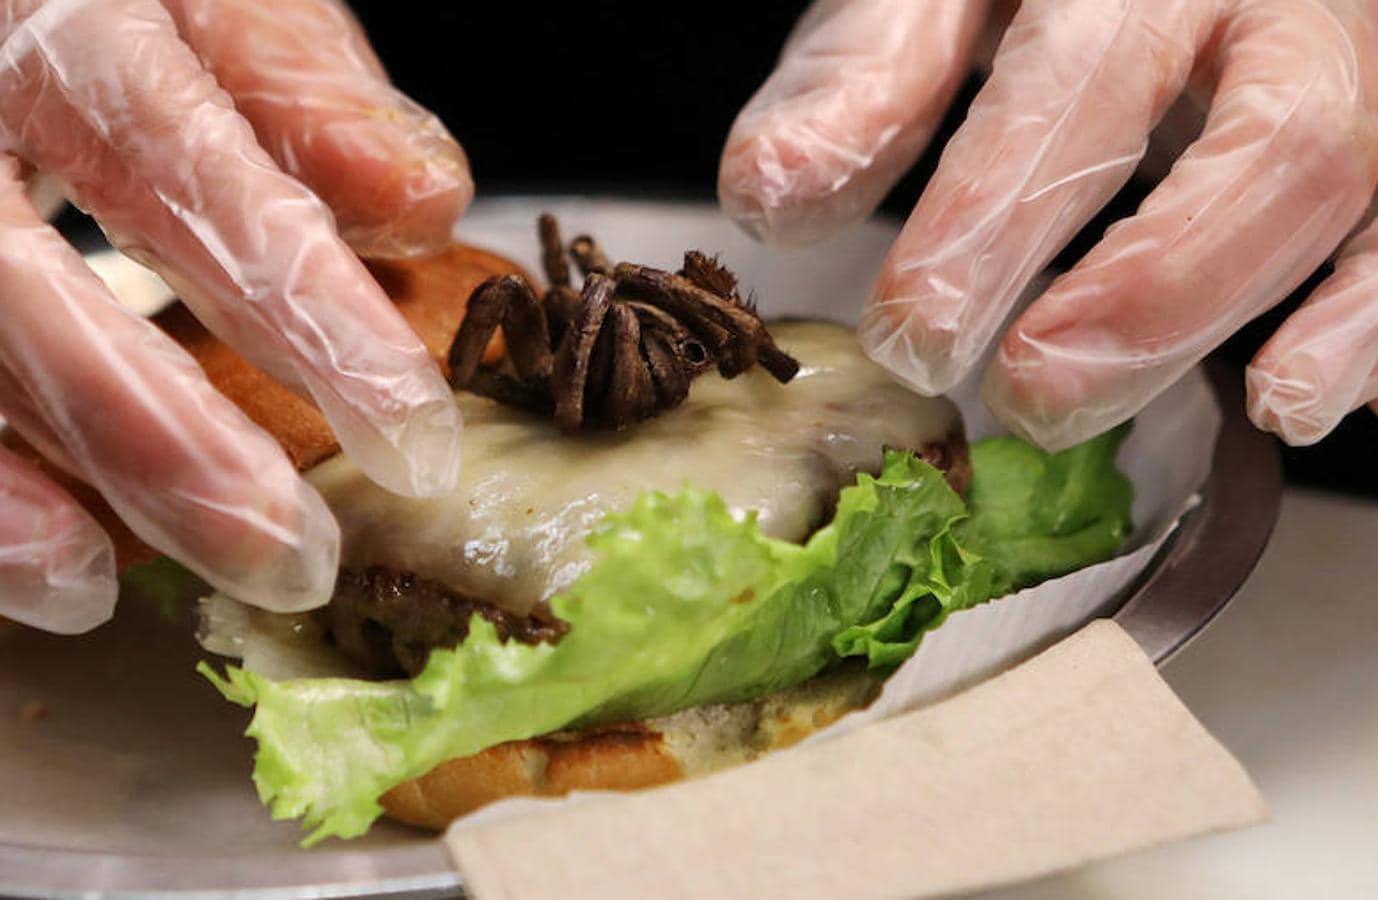 En este caso, para los comensales más aventureros, las hamburguesas con tarántulas se sirven en un restaurante de Durham, Carolina del Norte, como parte de su mes de 'carne exótica'. 